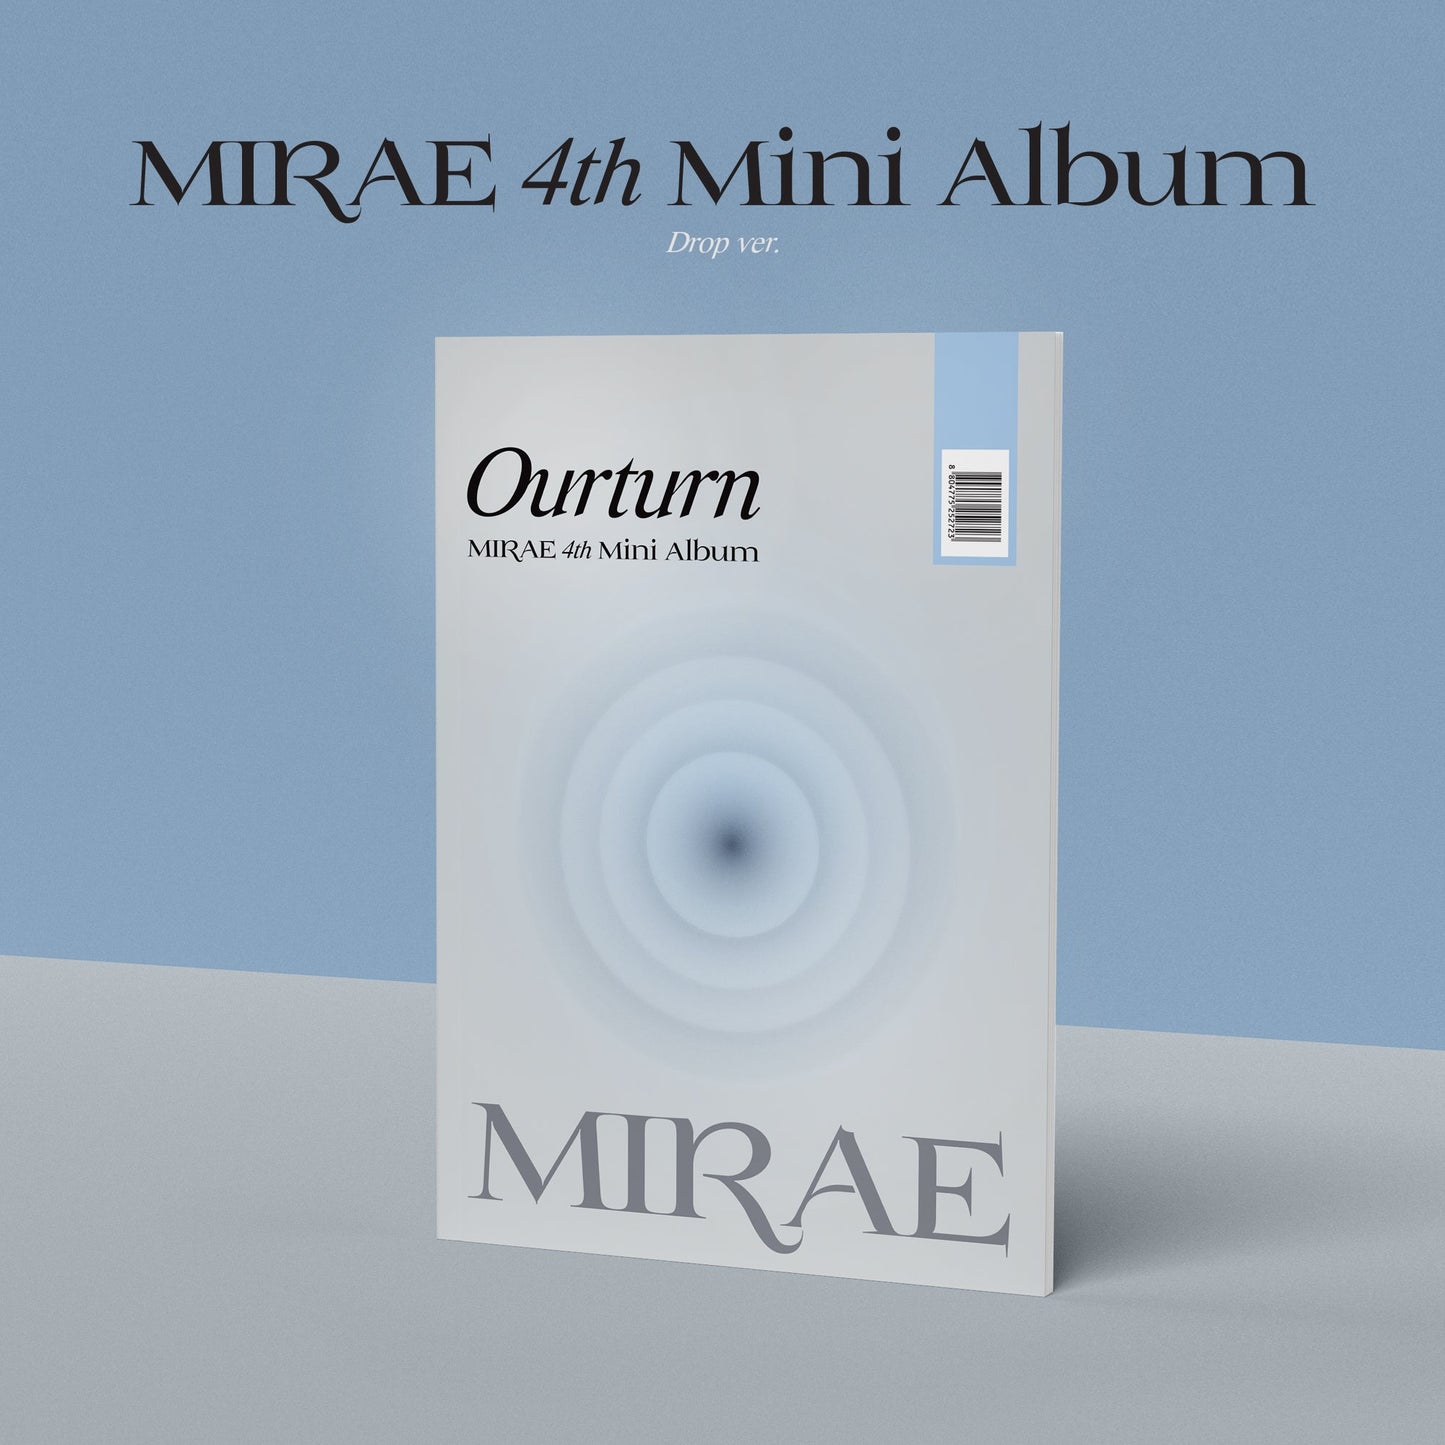 MIRAE 4TH MINI ALBUM 'OUTRUN' DROP COVER